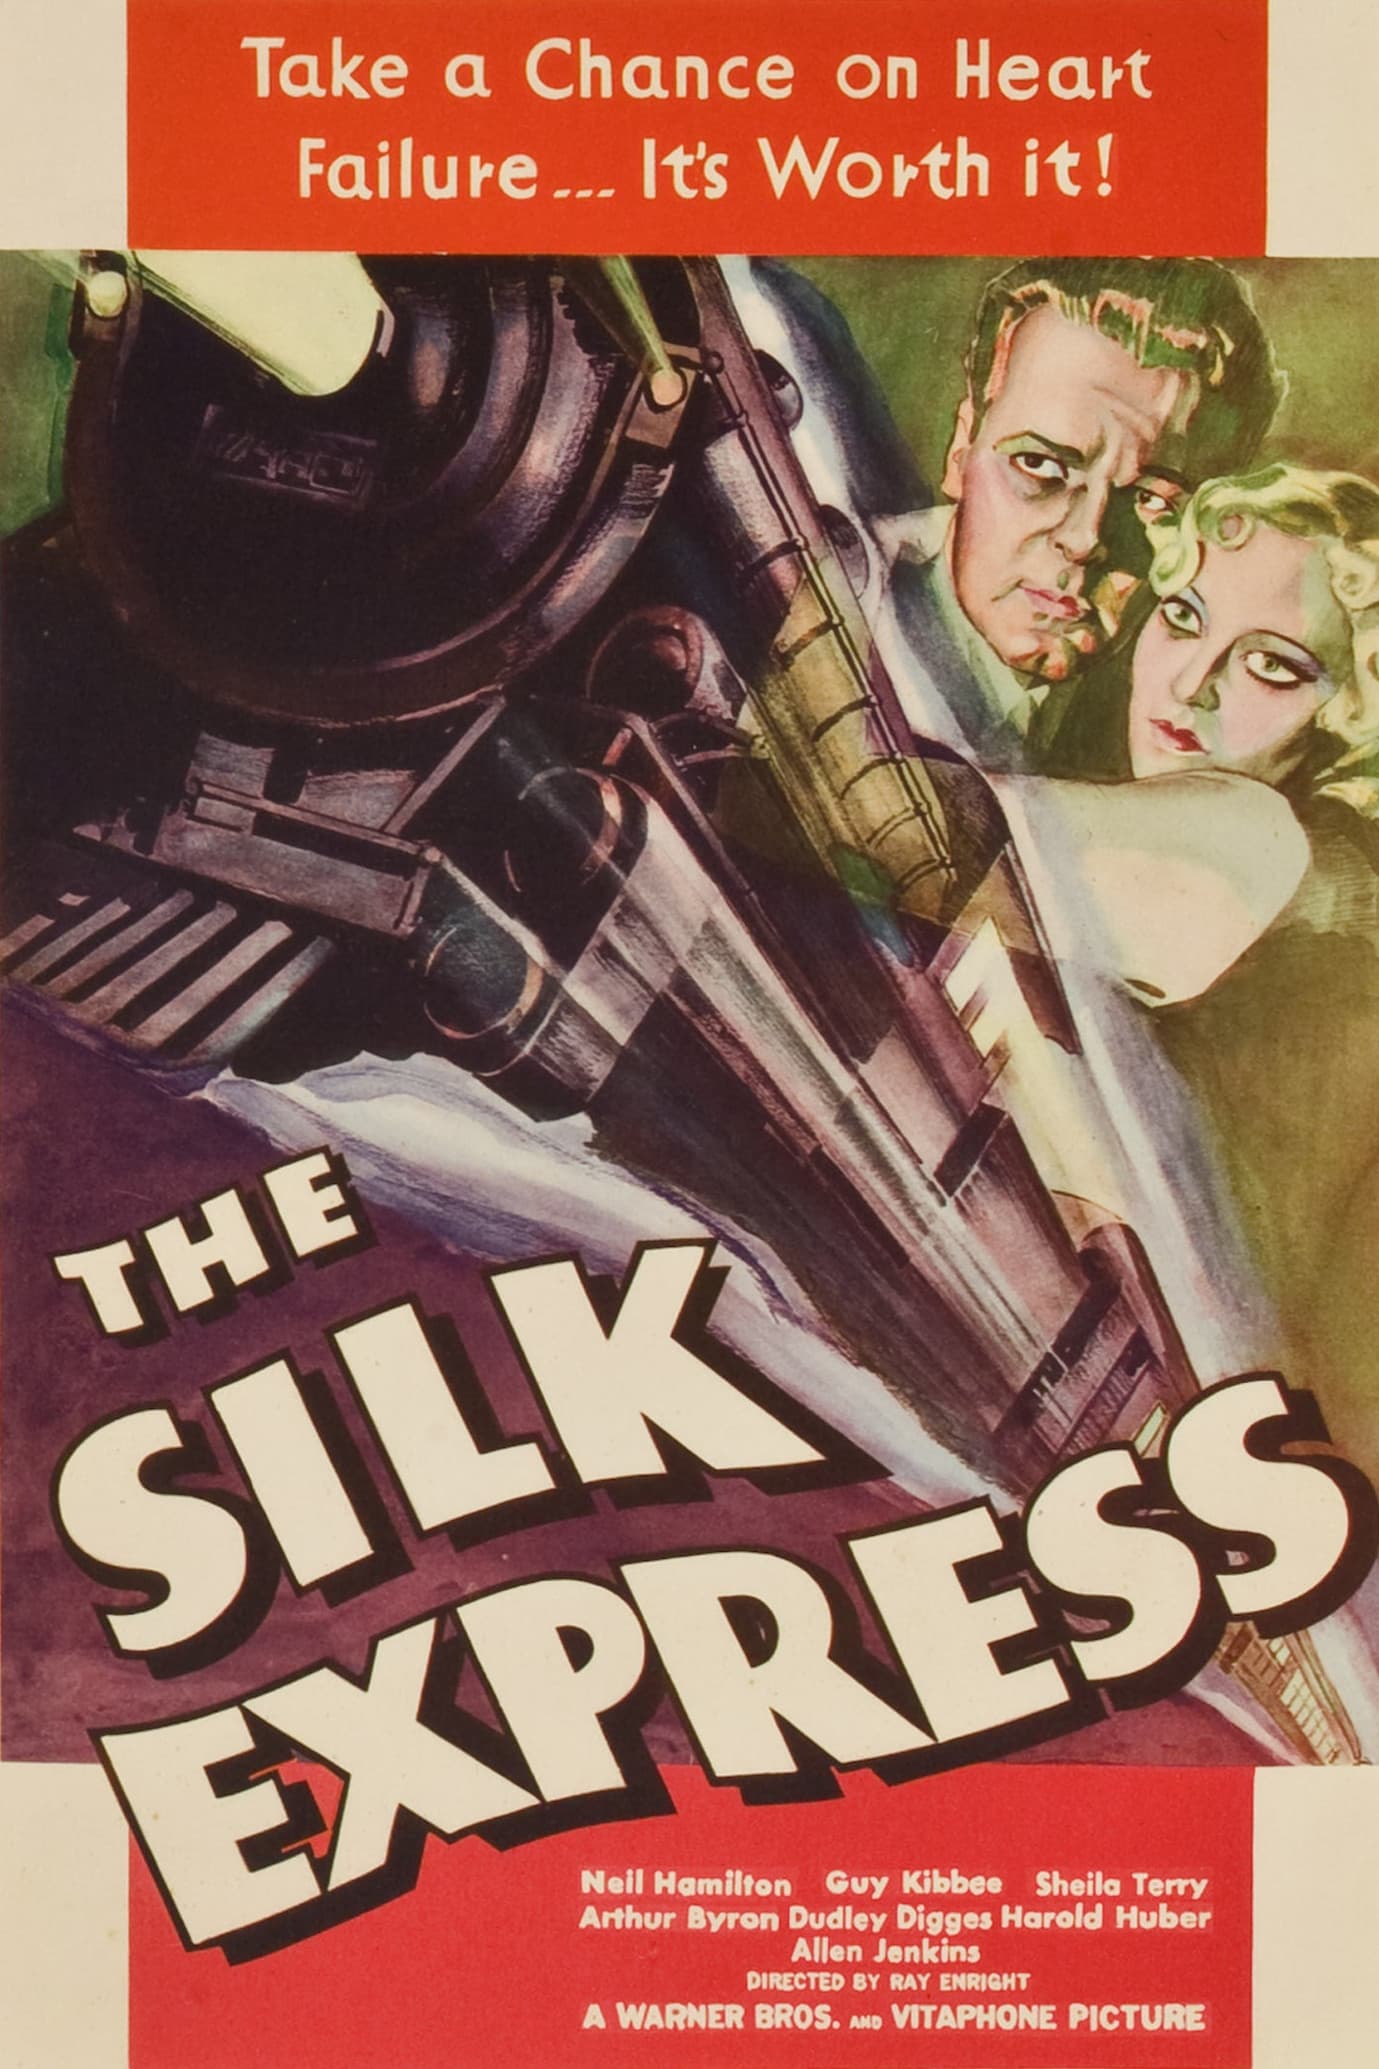 The Silk Express (1933)